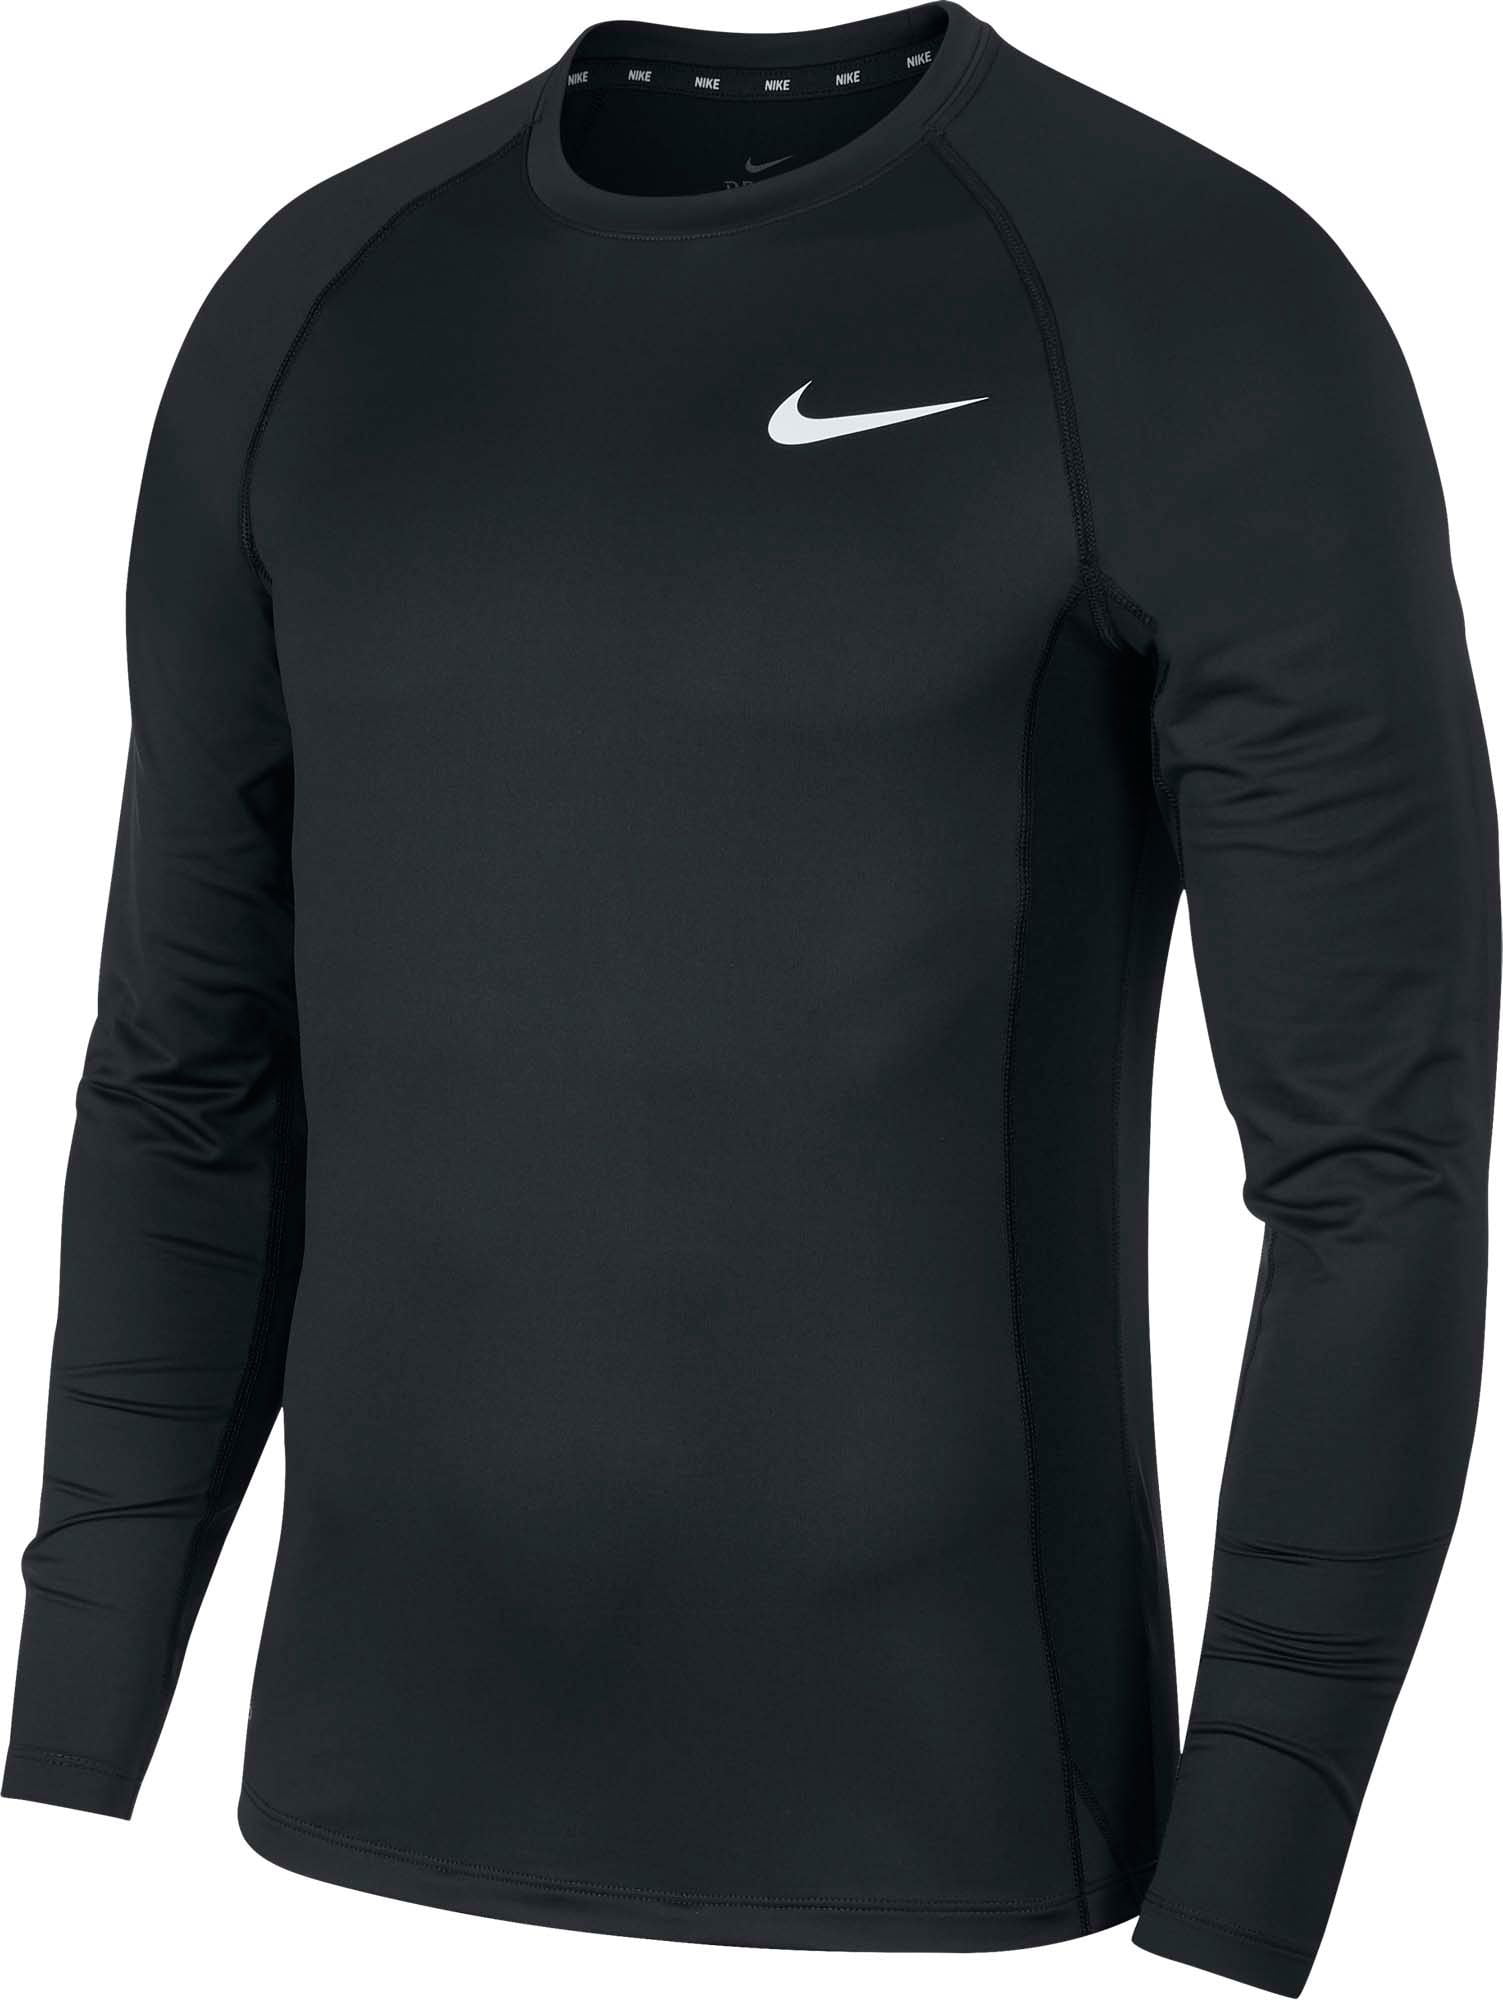 Nike Shirts Men